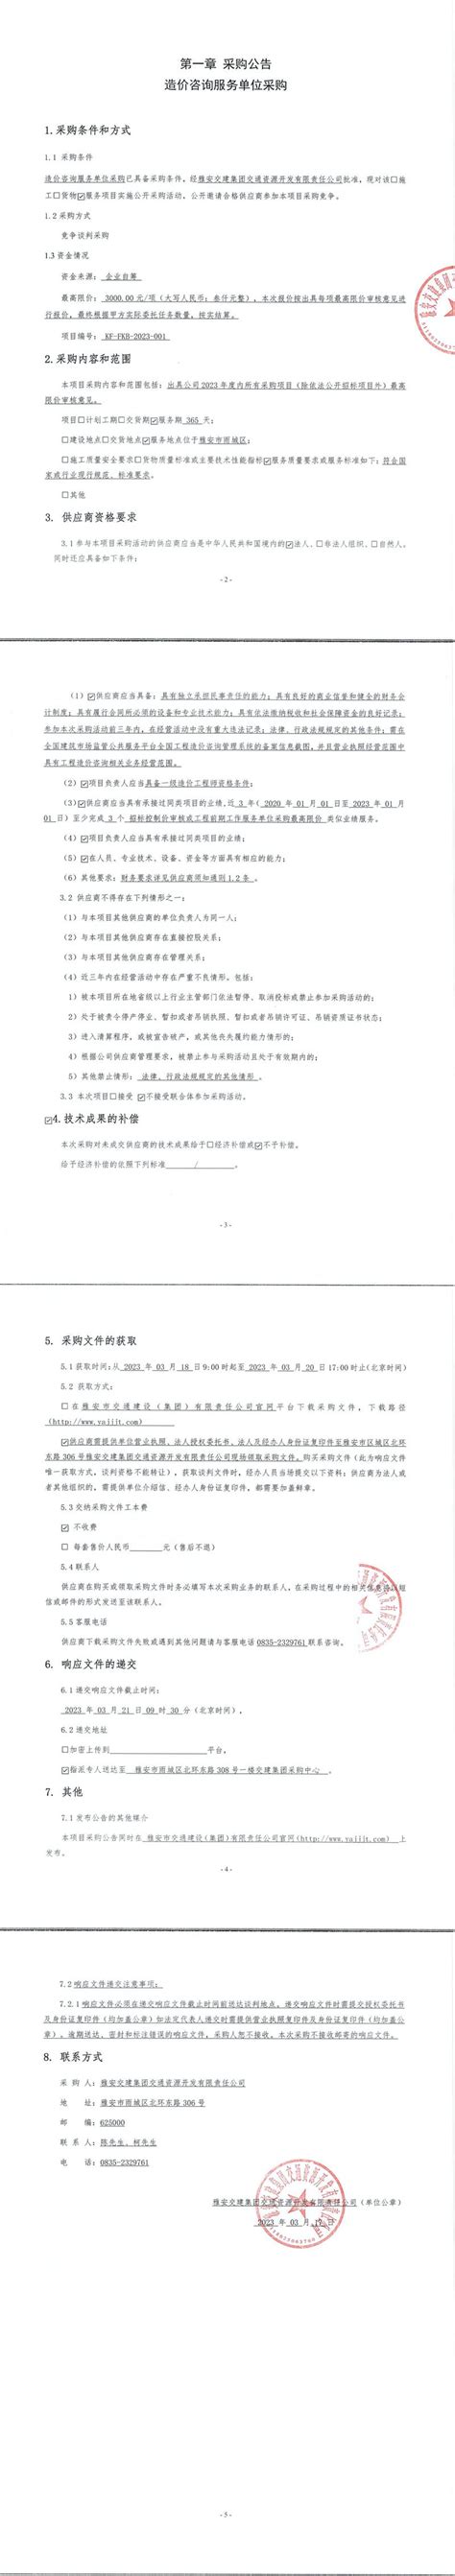 2019年4月12日 的招标工作-四川顺智招投标代理有限公司